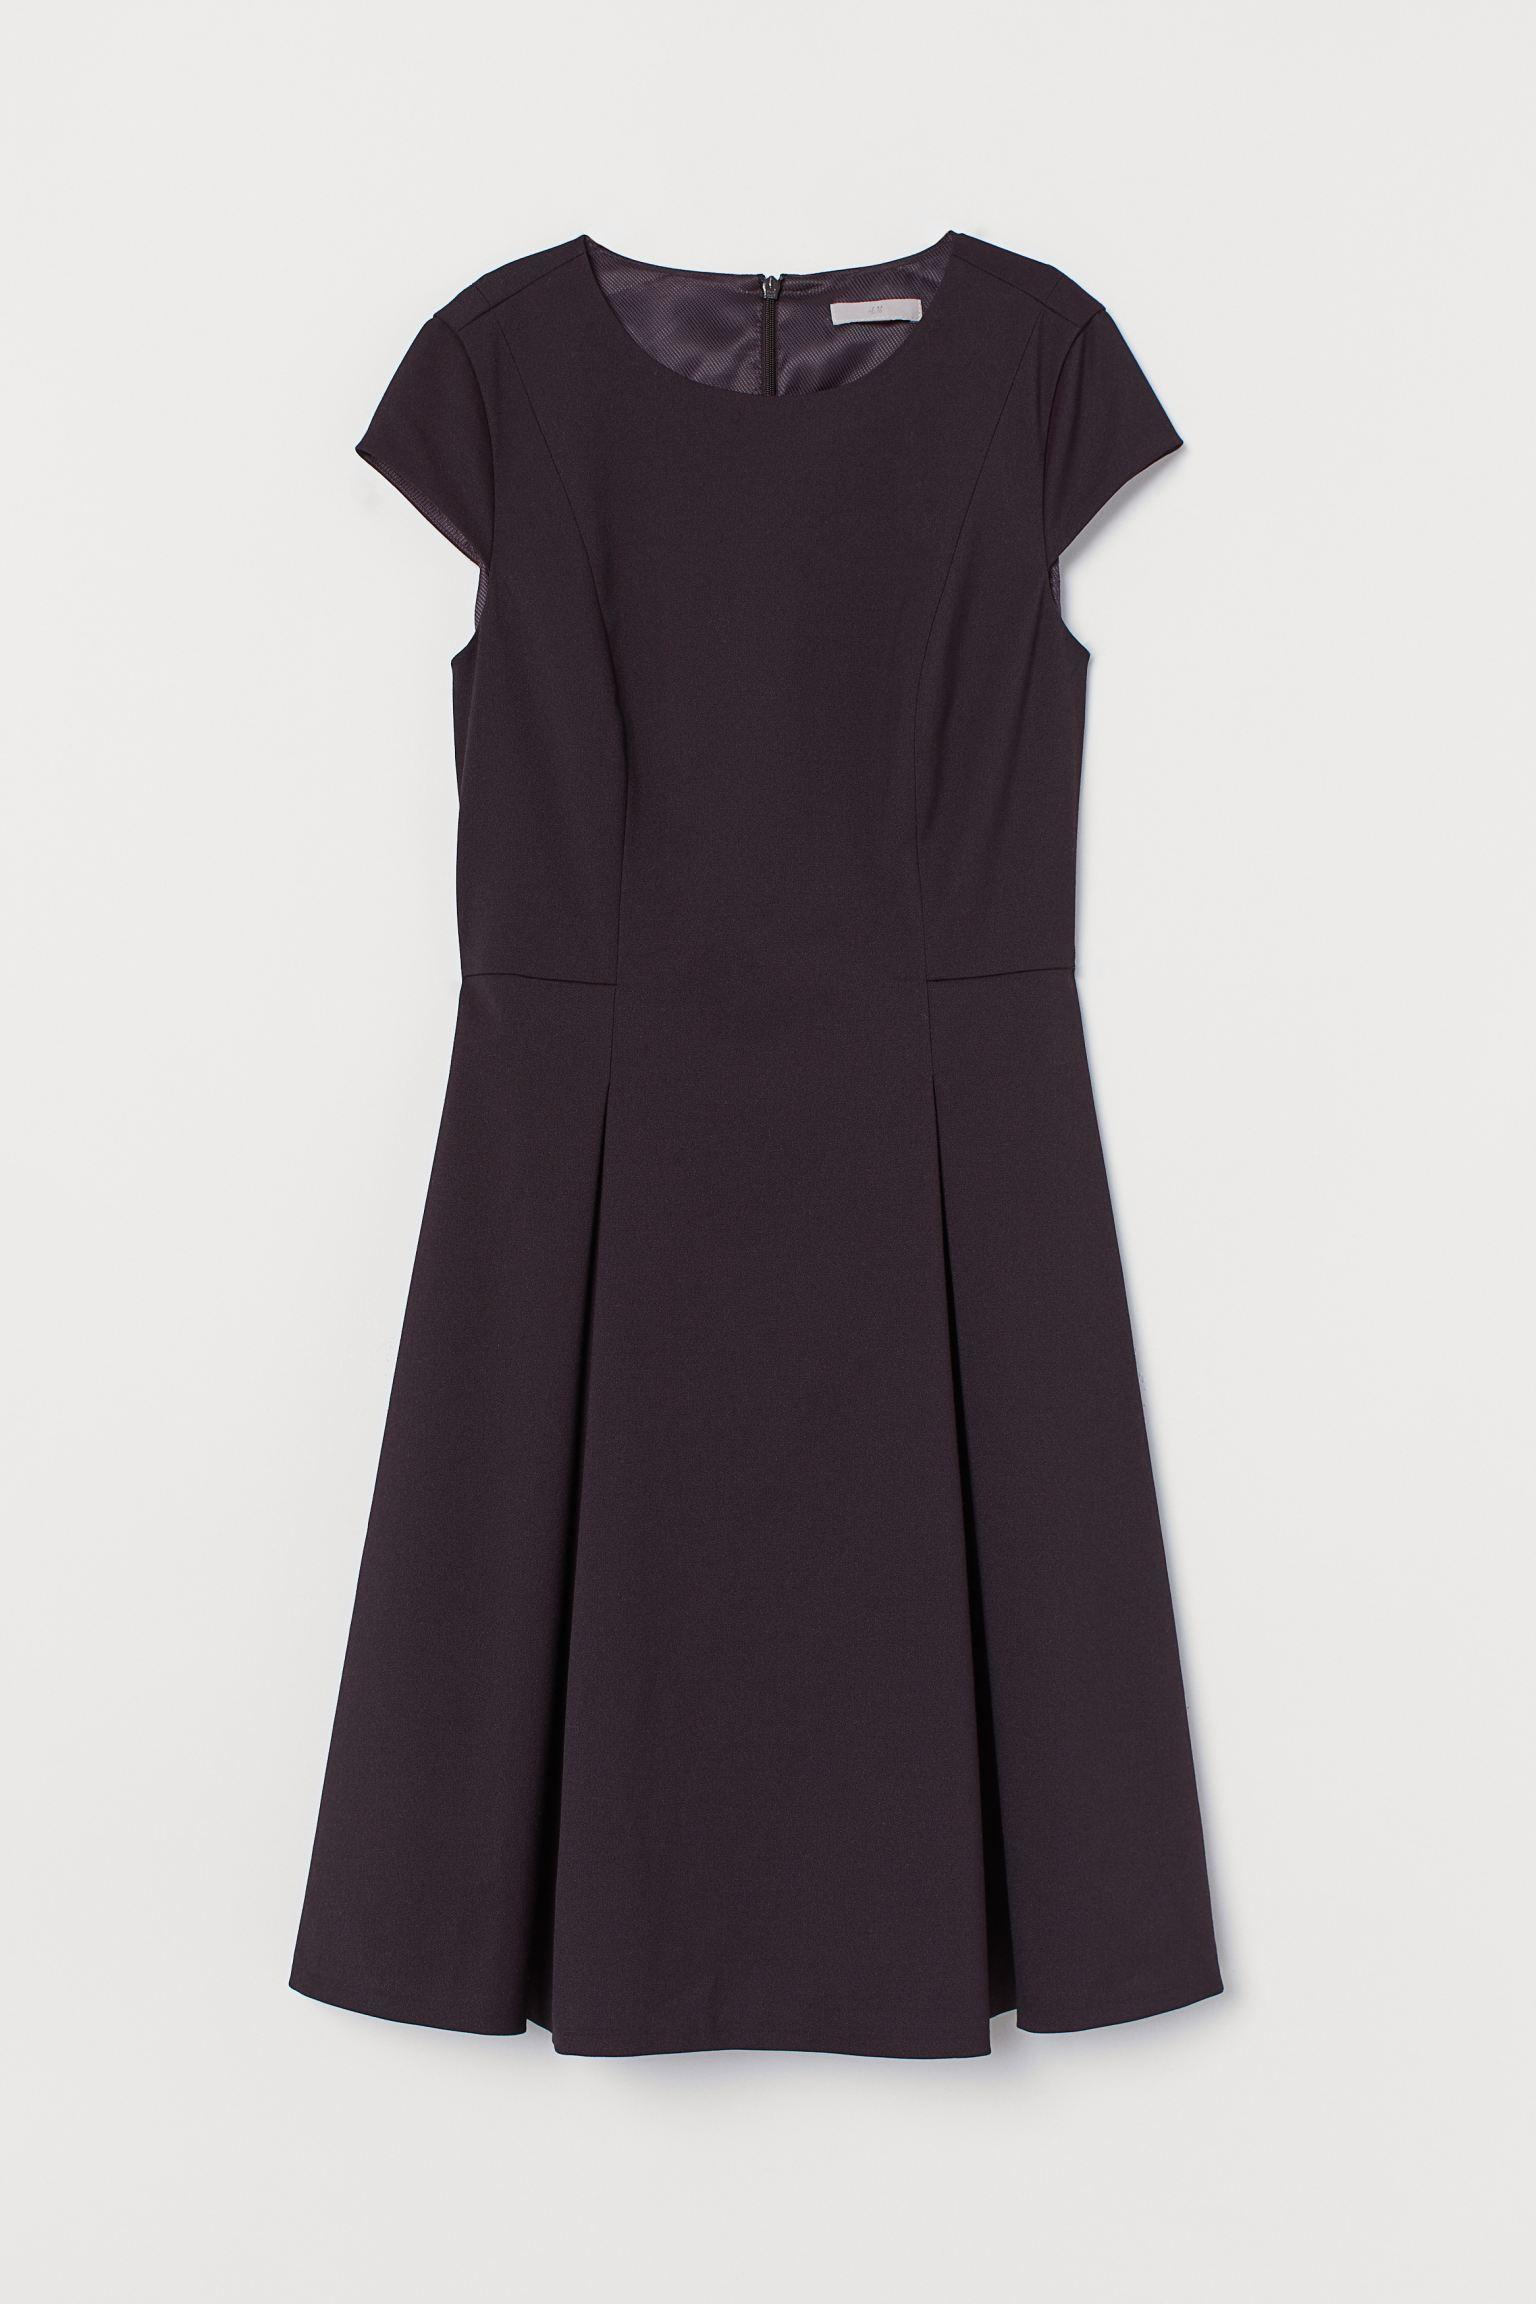 Отзыв на Платье с Крышка рукава из Интернет-Магазина H&M